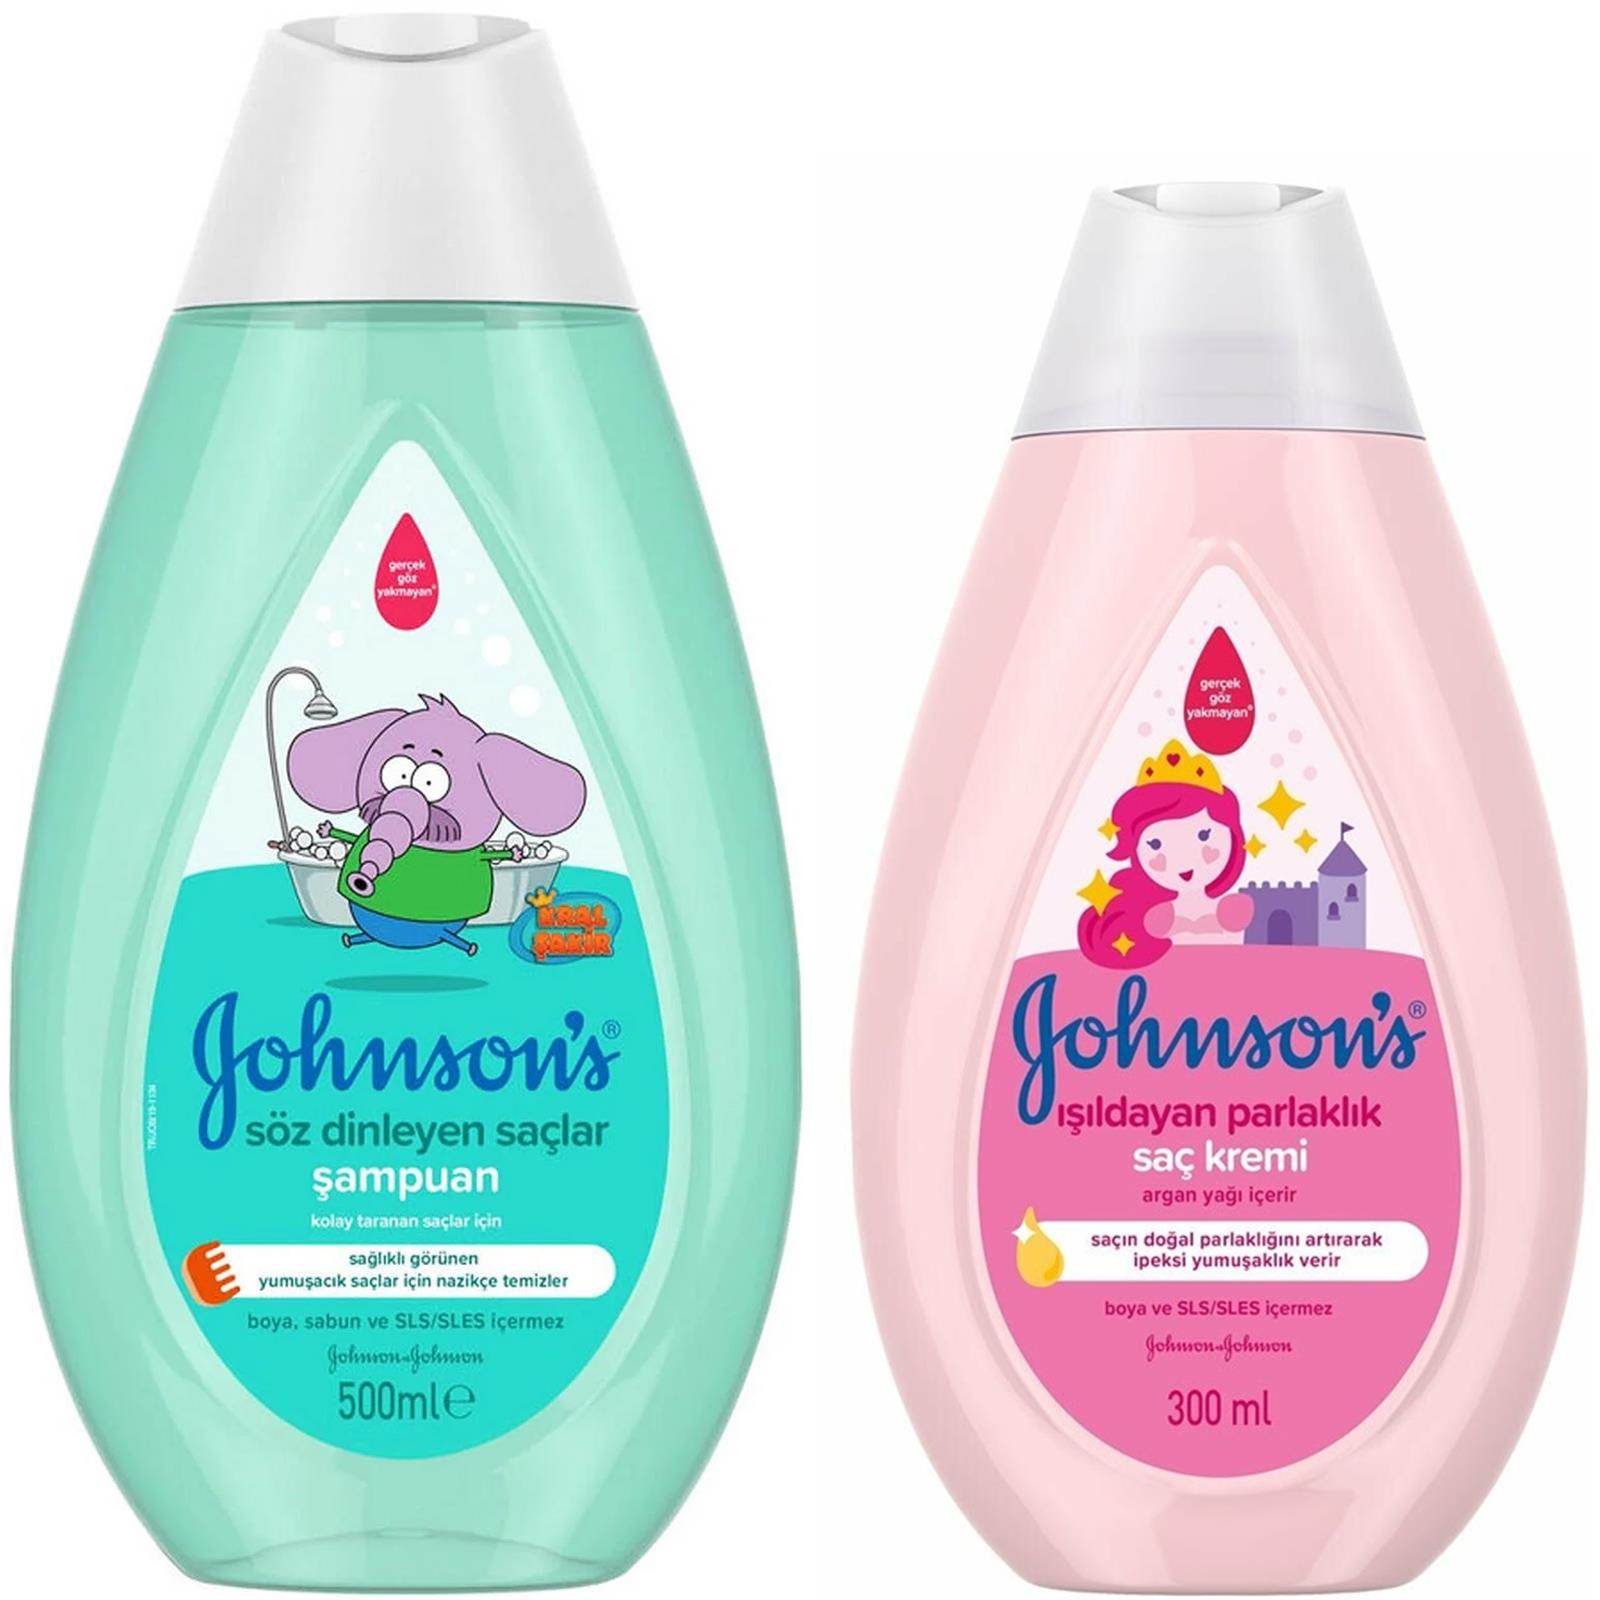 Johnsons Kral Şakir Söz Dinleyen Saçlar Şampuanı 500 ml + Johnsons Işıldayan Parlaklık Saç Kremi 300 ml